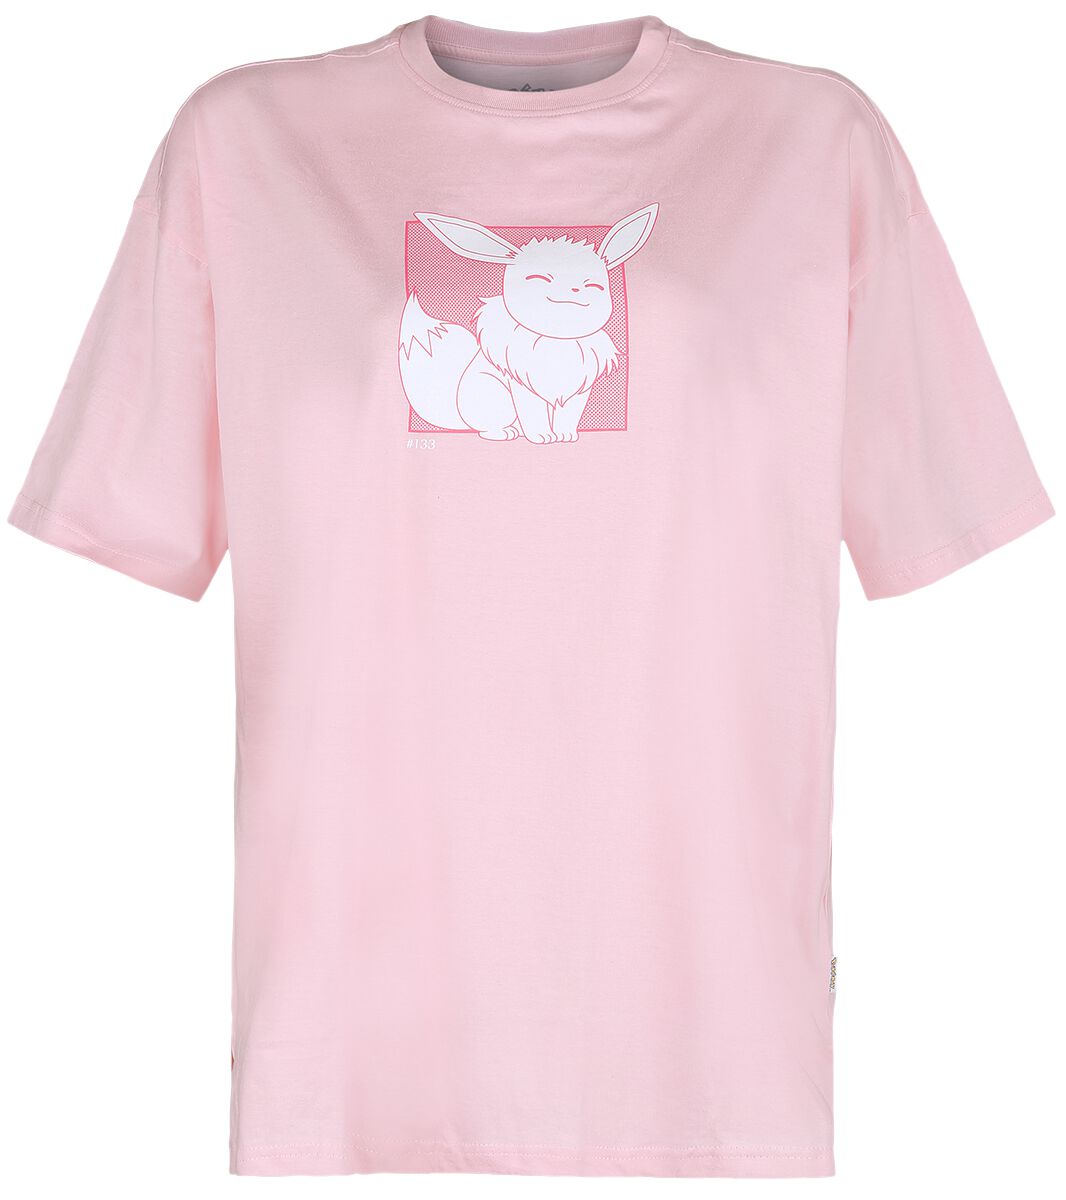 T-Shirt Manches courtes Gaming de Pokémon - Evoli - Eeveelutions - M à XXL - pour Femme - rose